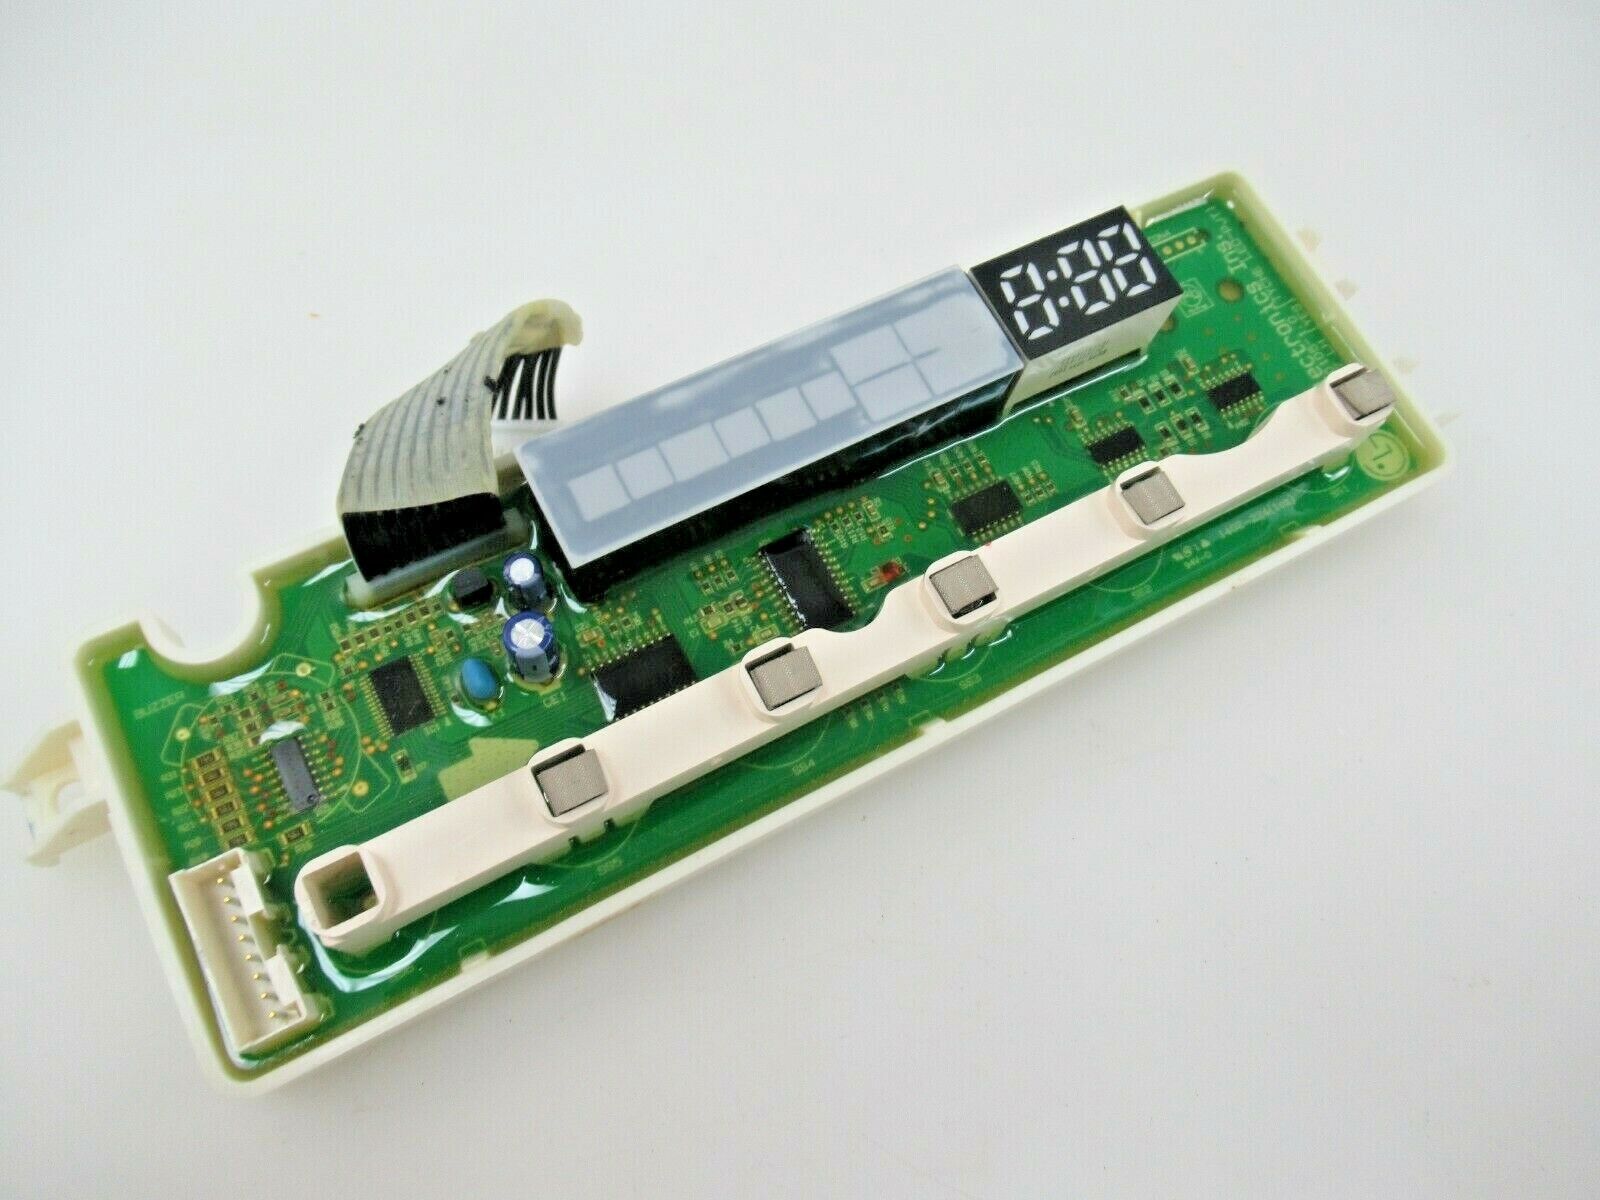 LG Dishwasher Display Power Control Board. Part #EBR74727307-USED